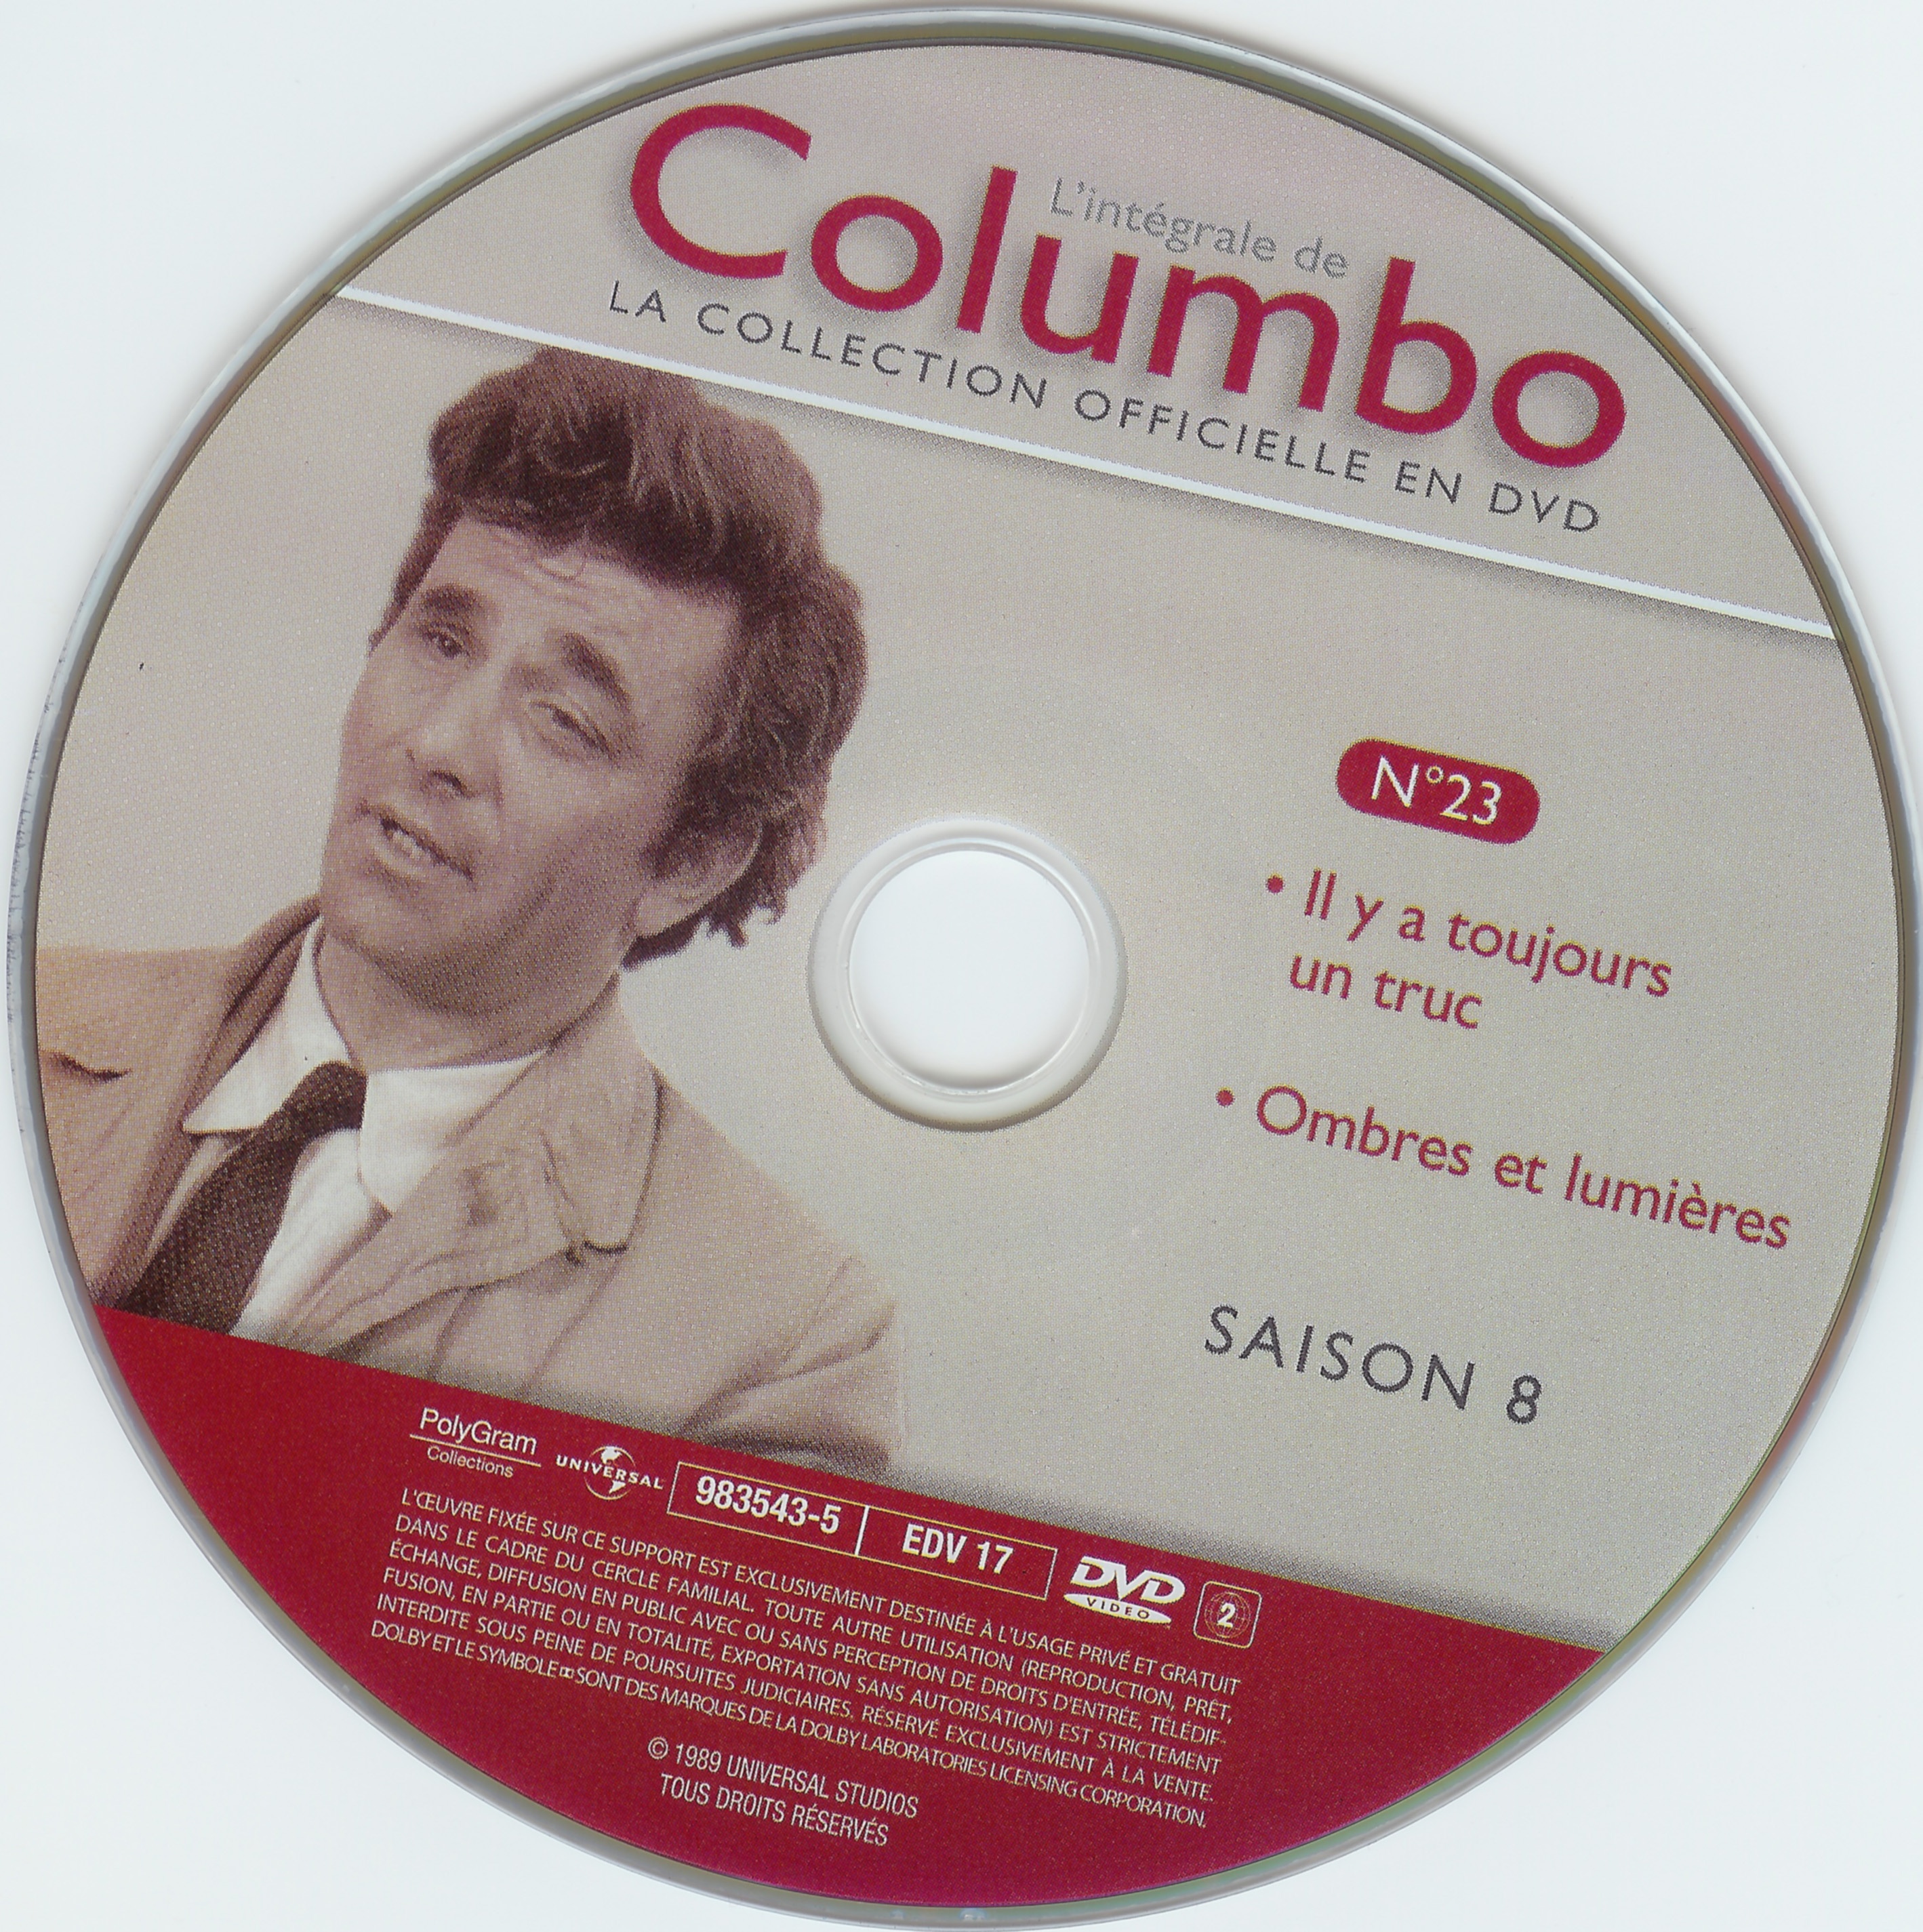 Columbo saison 8 vol 23